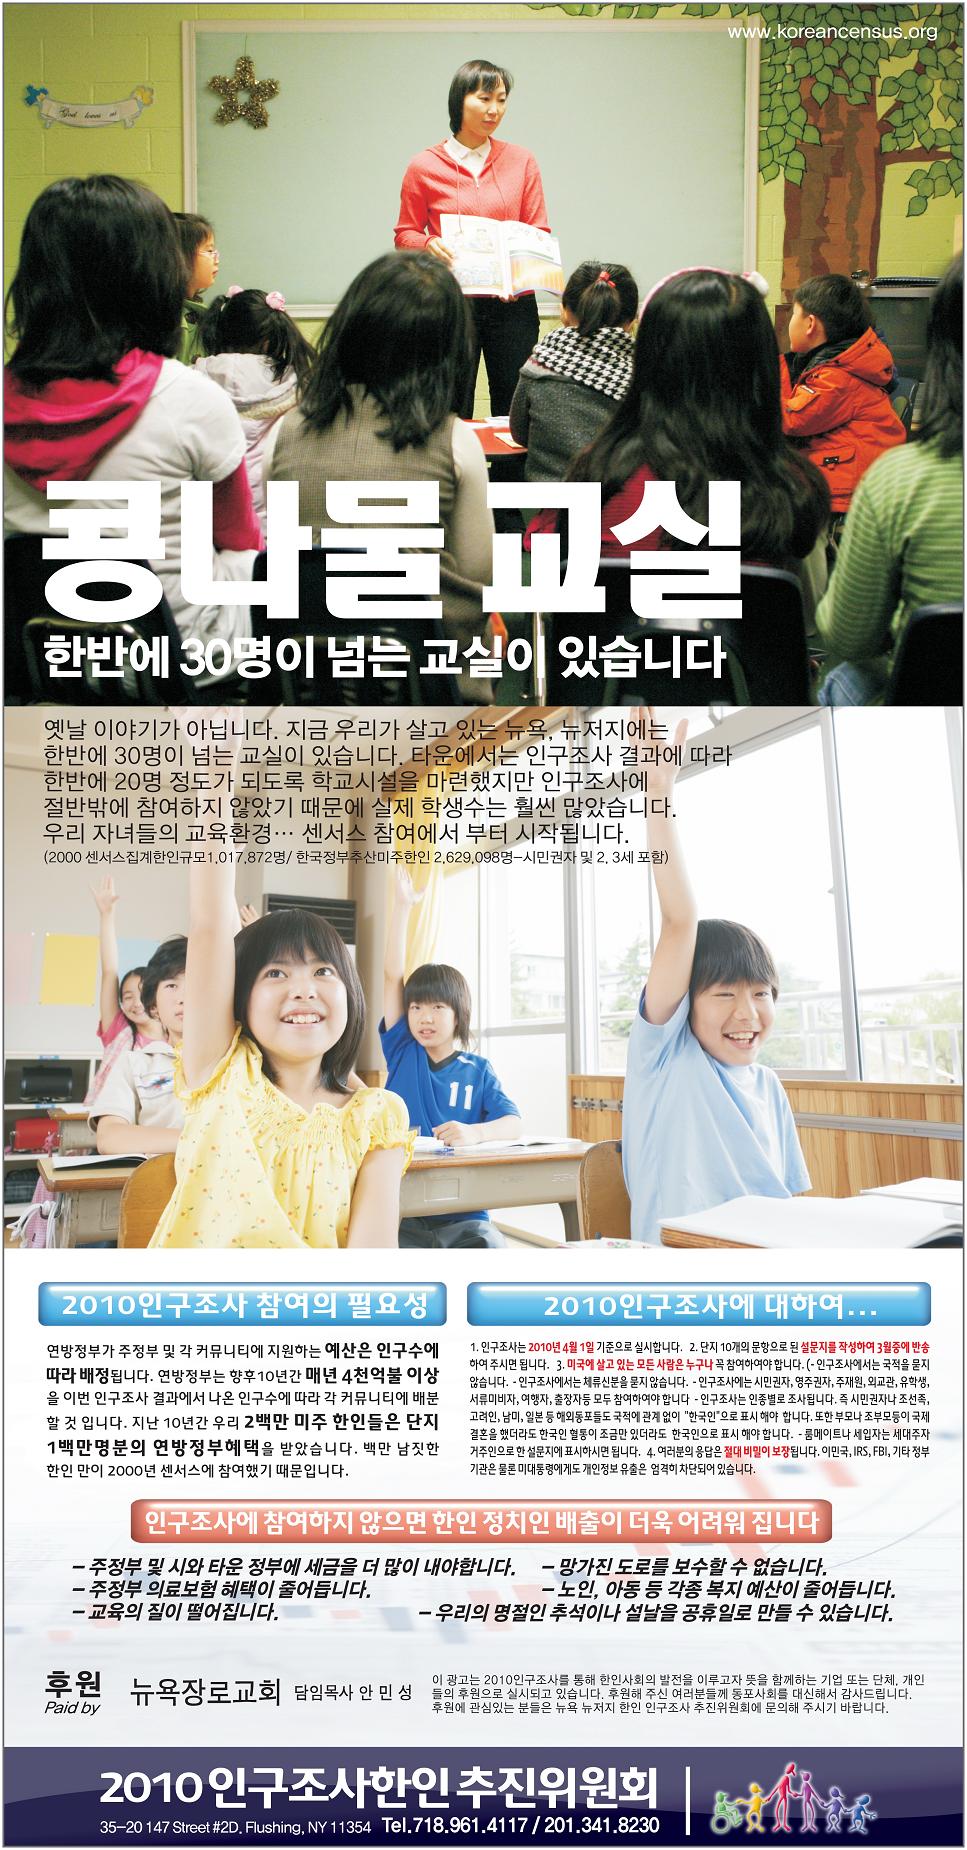 2010 인구조사 추진위 신문광고 – 콩나물 교실